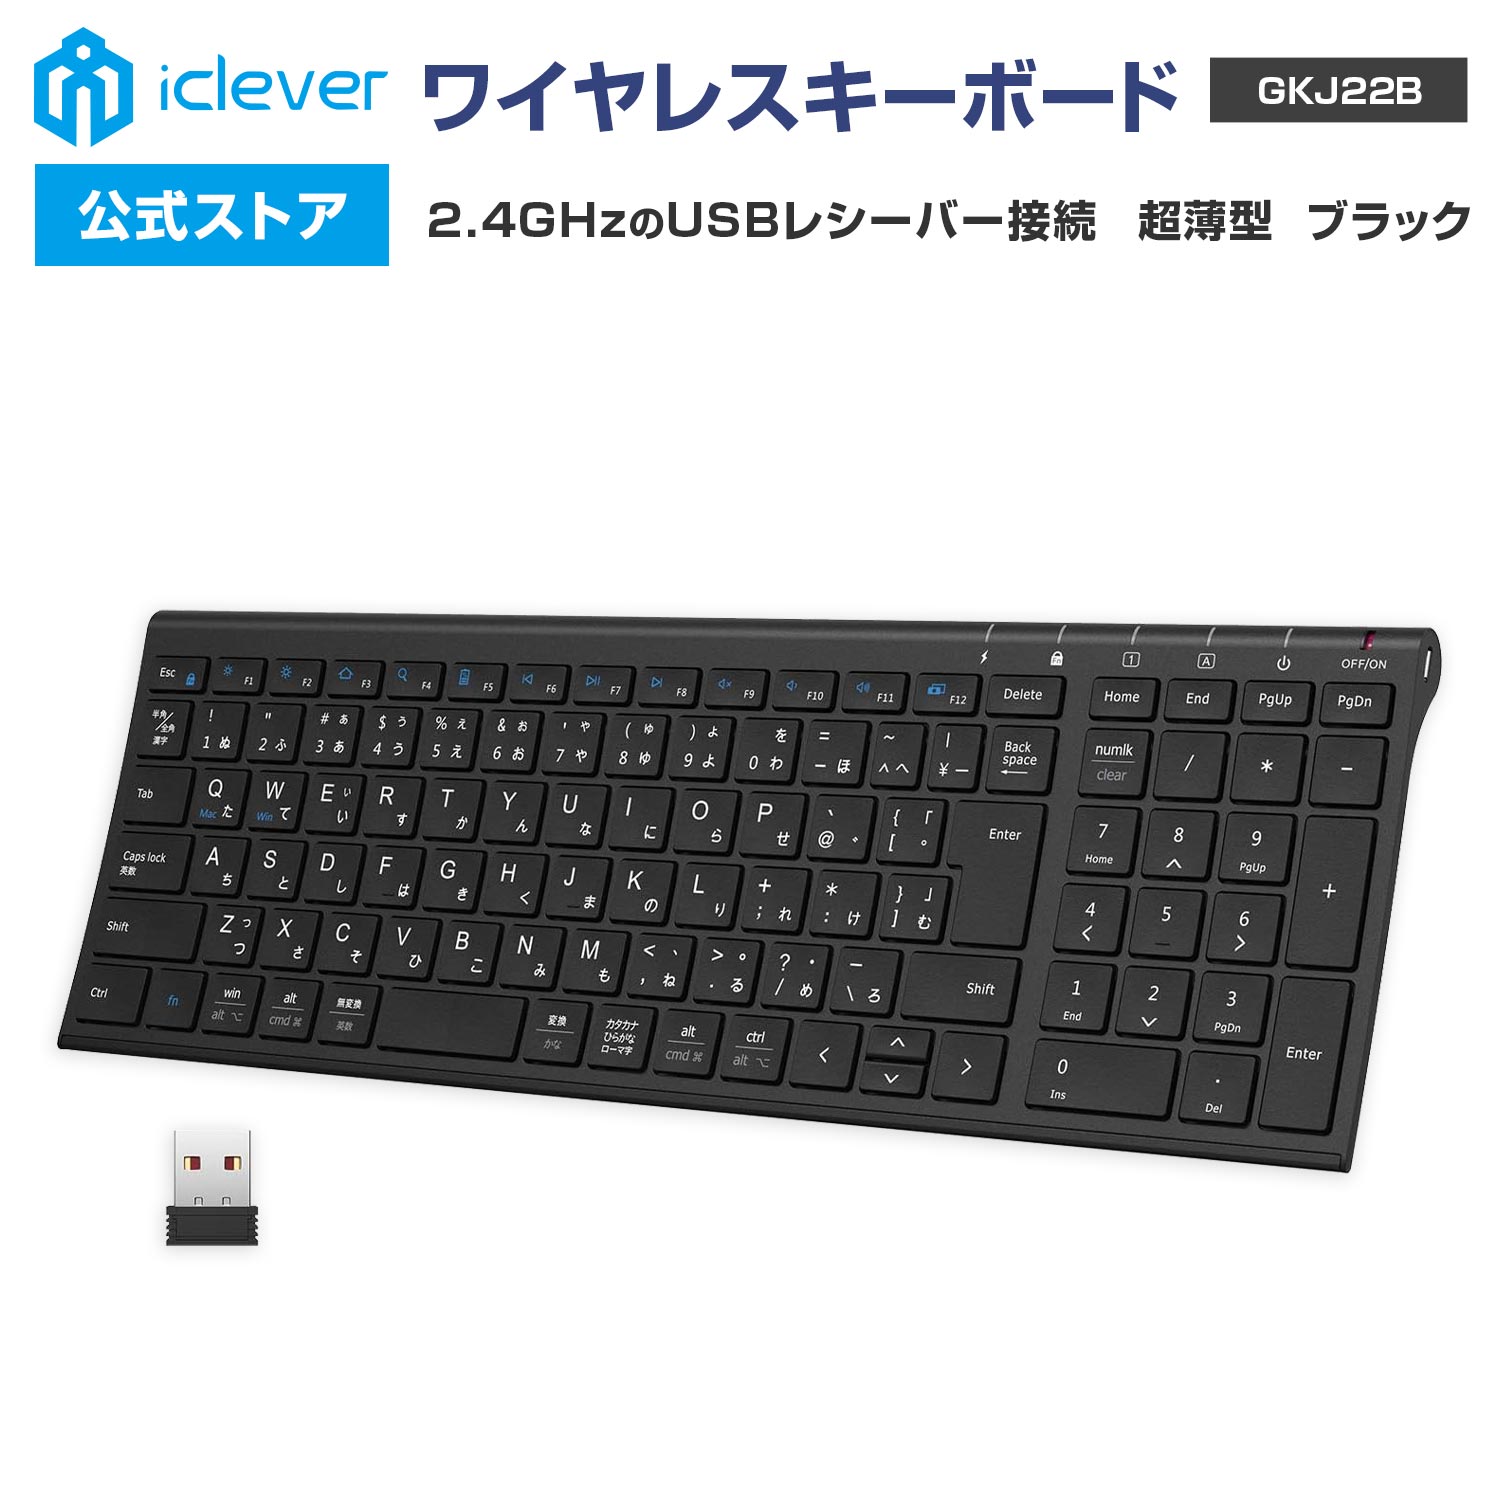 【iClever公式】 ＜お買い物マラソン P20倍＞ ワイヤレスキーボード GKJ22B 人気 話題 2.4GHz接続 USBレシーバー接続 テンキー搭載 日本語配列 超薄型 パンタグラフ式 スタイリッシュ ガジェッ…